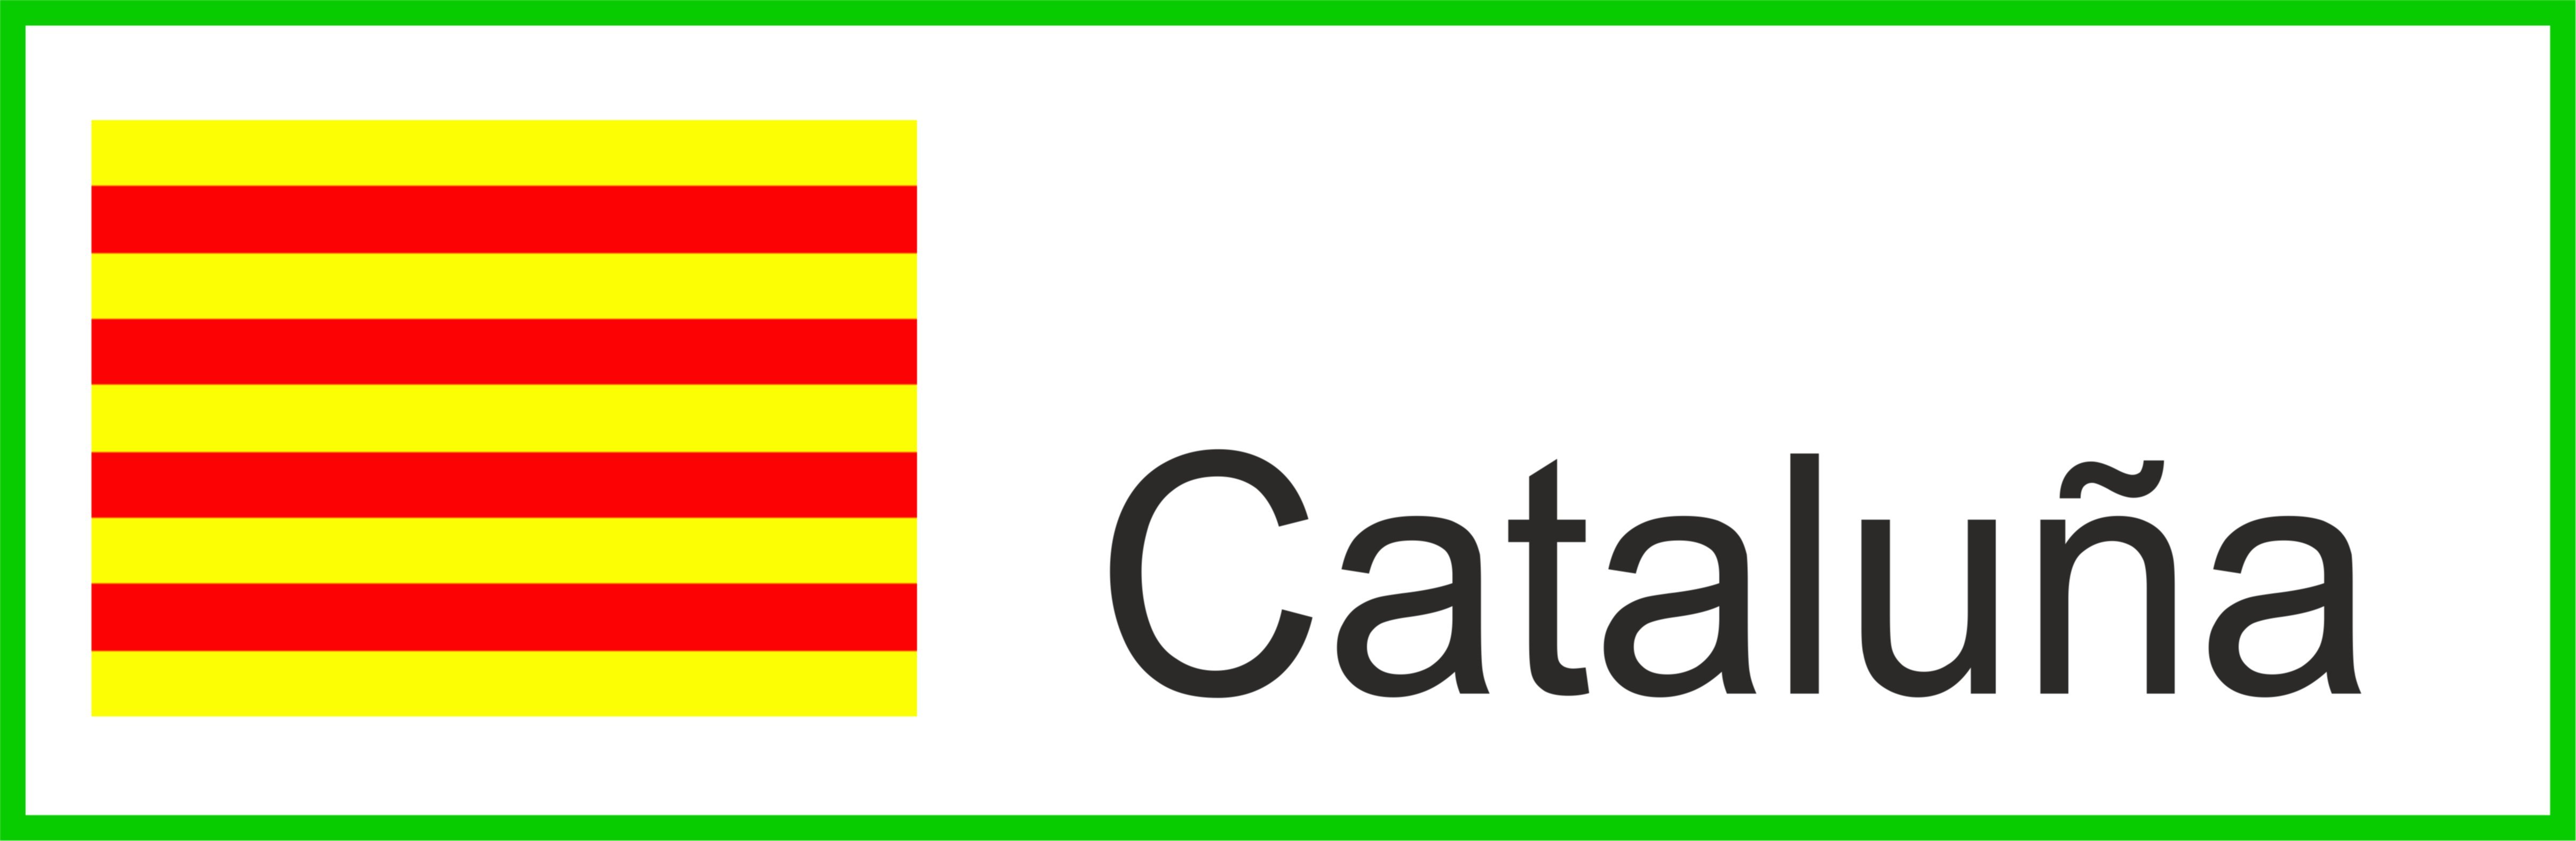 Pictogramas_Cataluna